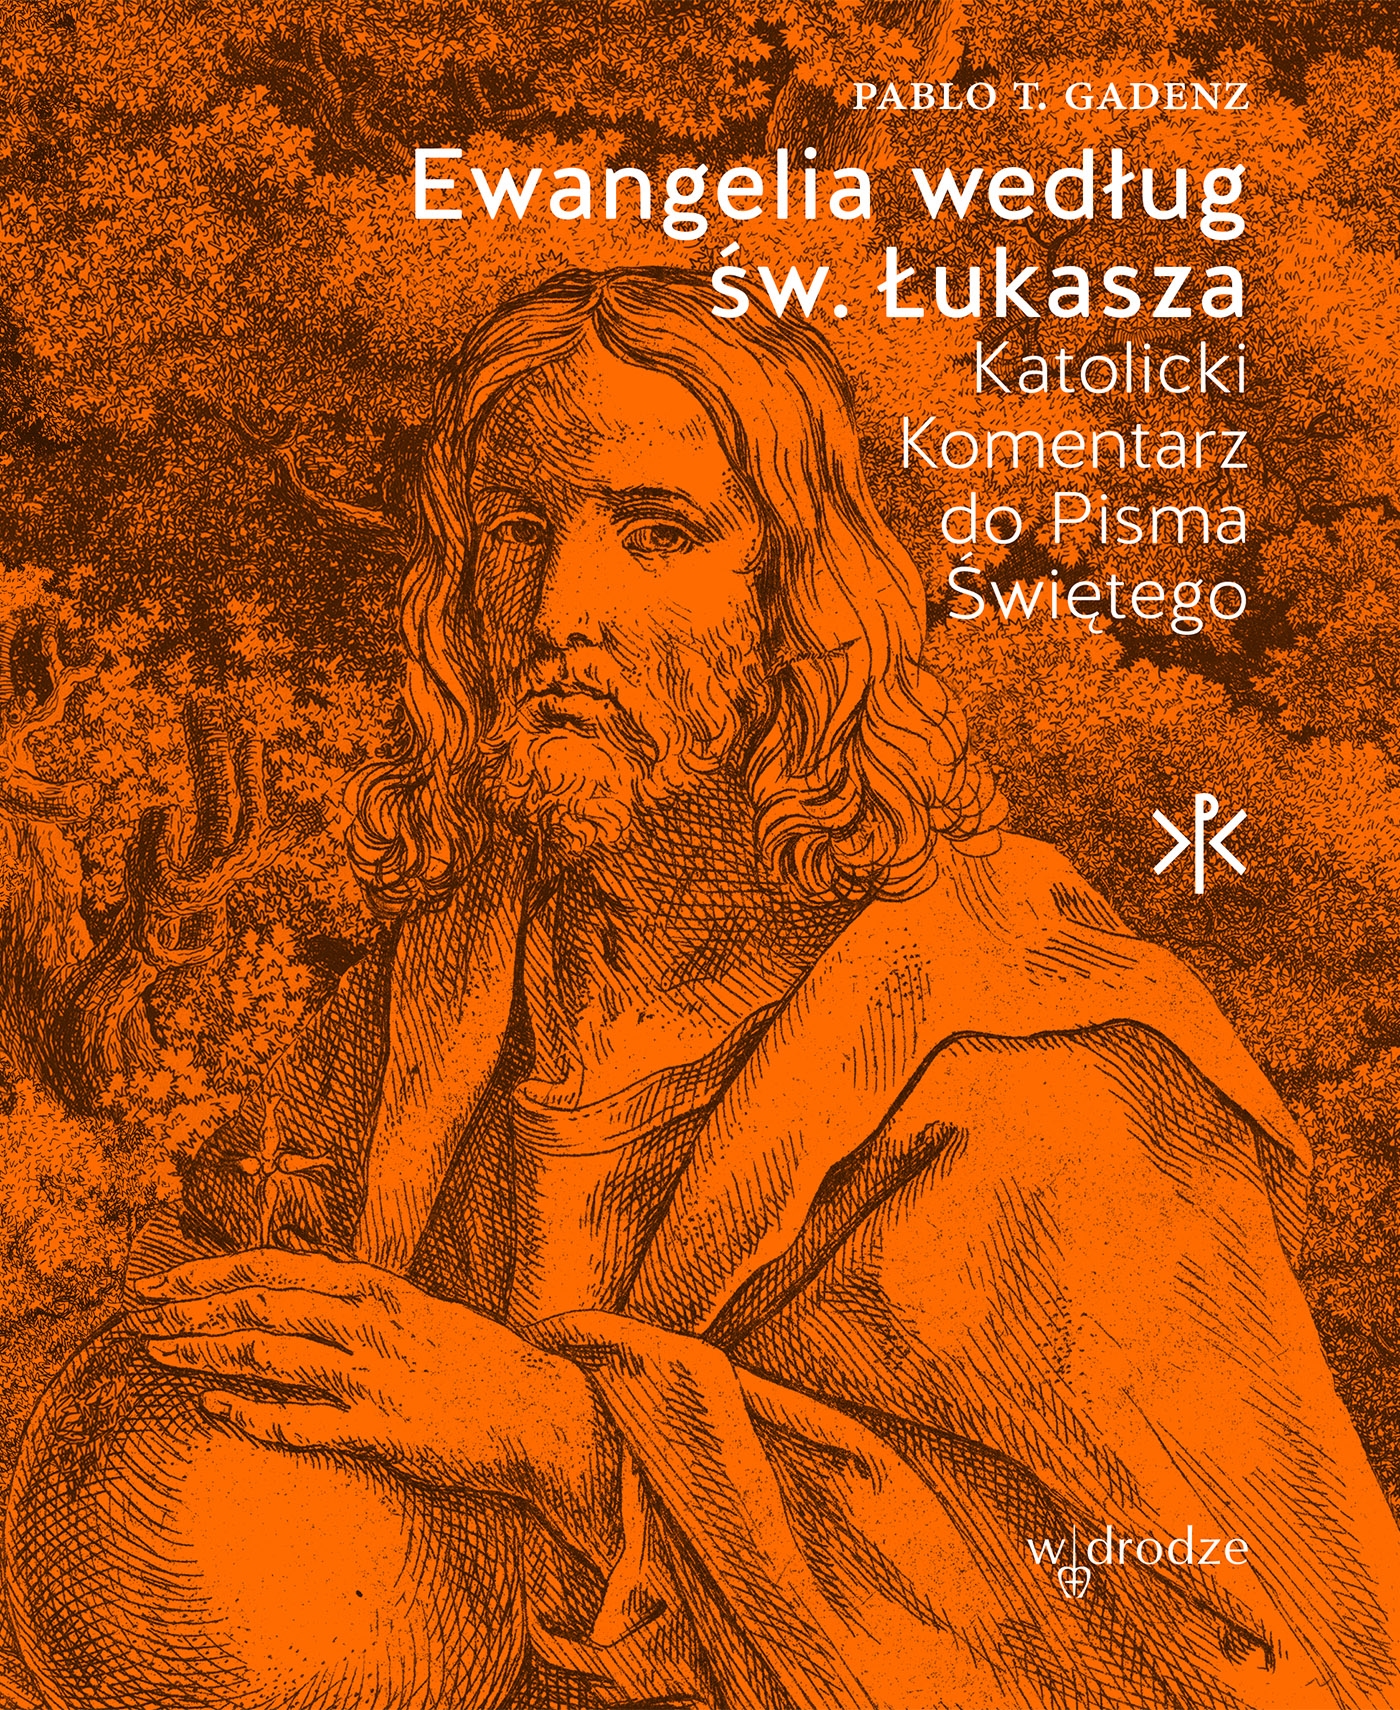 Ewangelia wg św. Łukasza | wydawnictwowam.pl